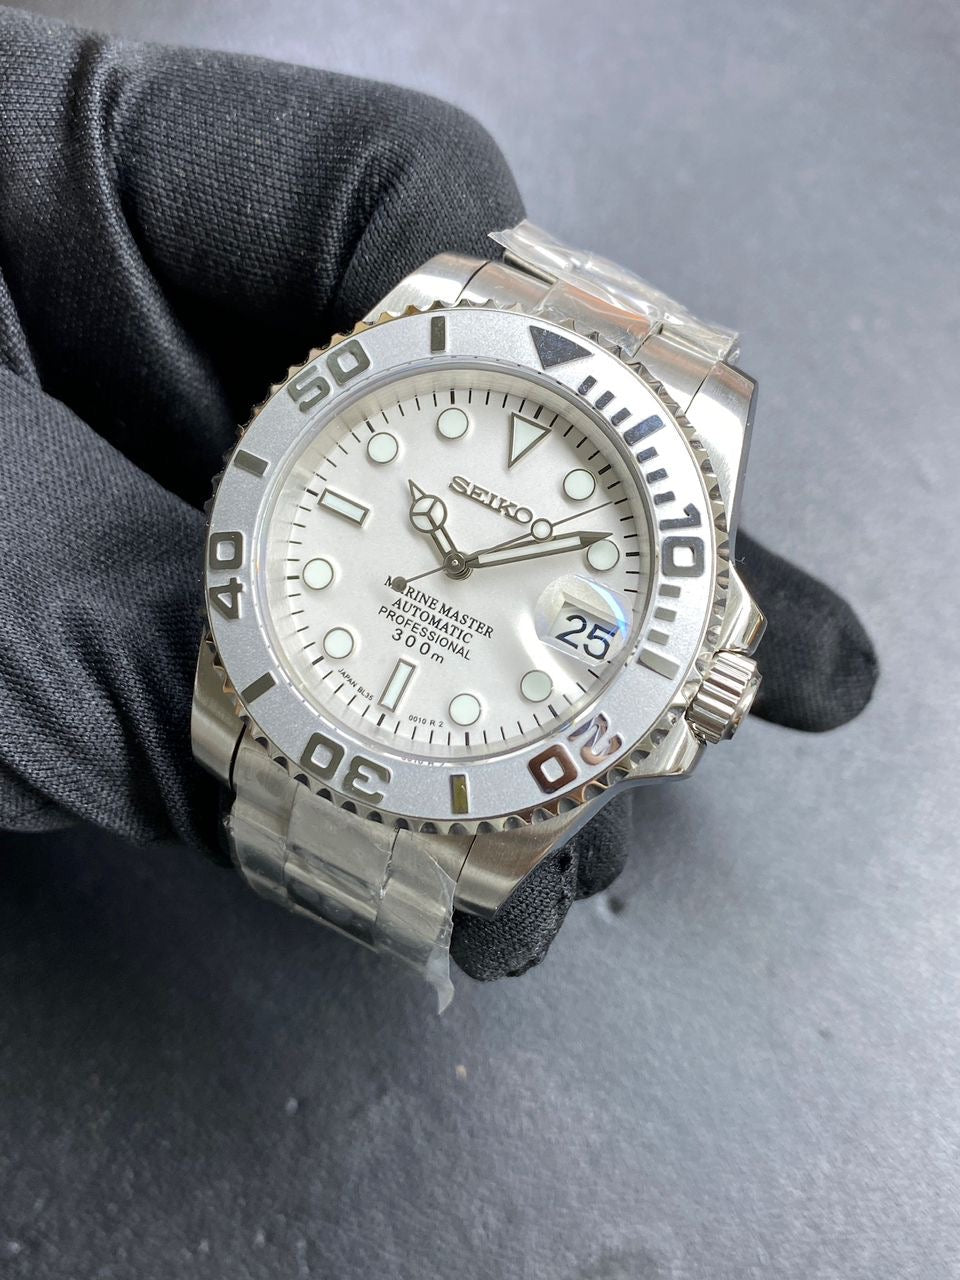 Seiko mod white yachtmaster mod automatic watch